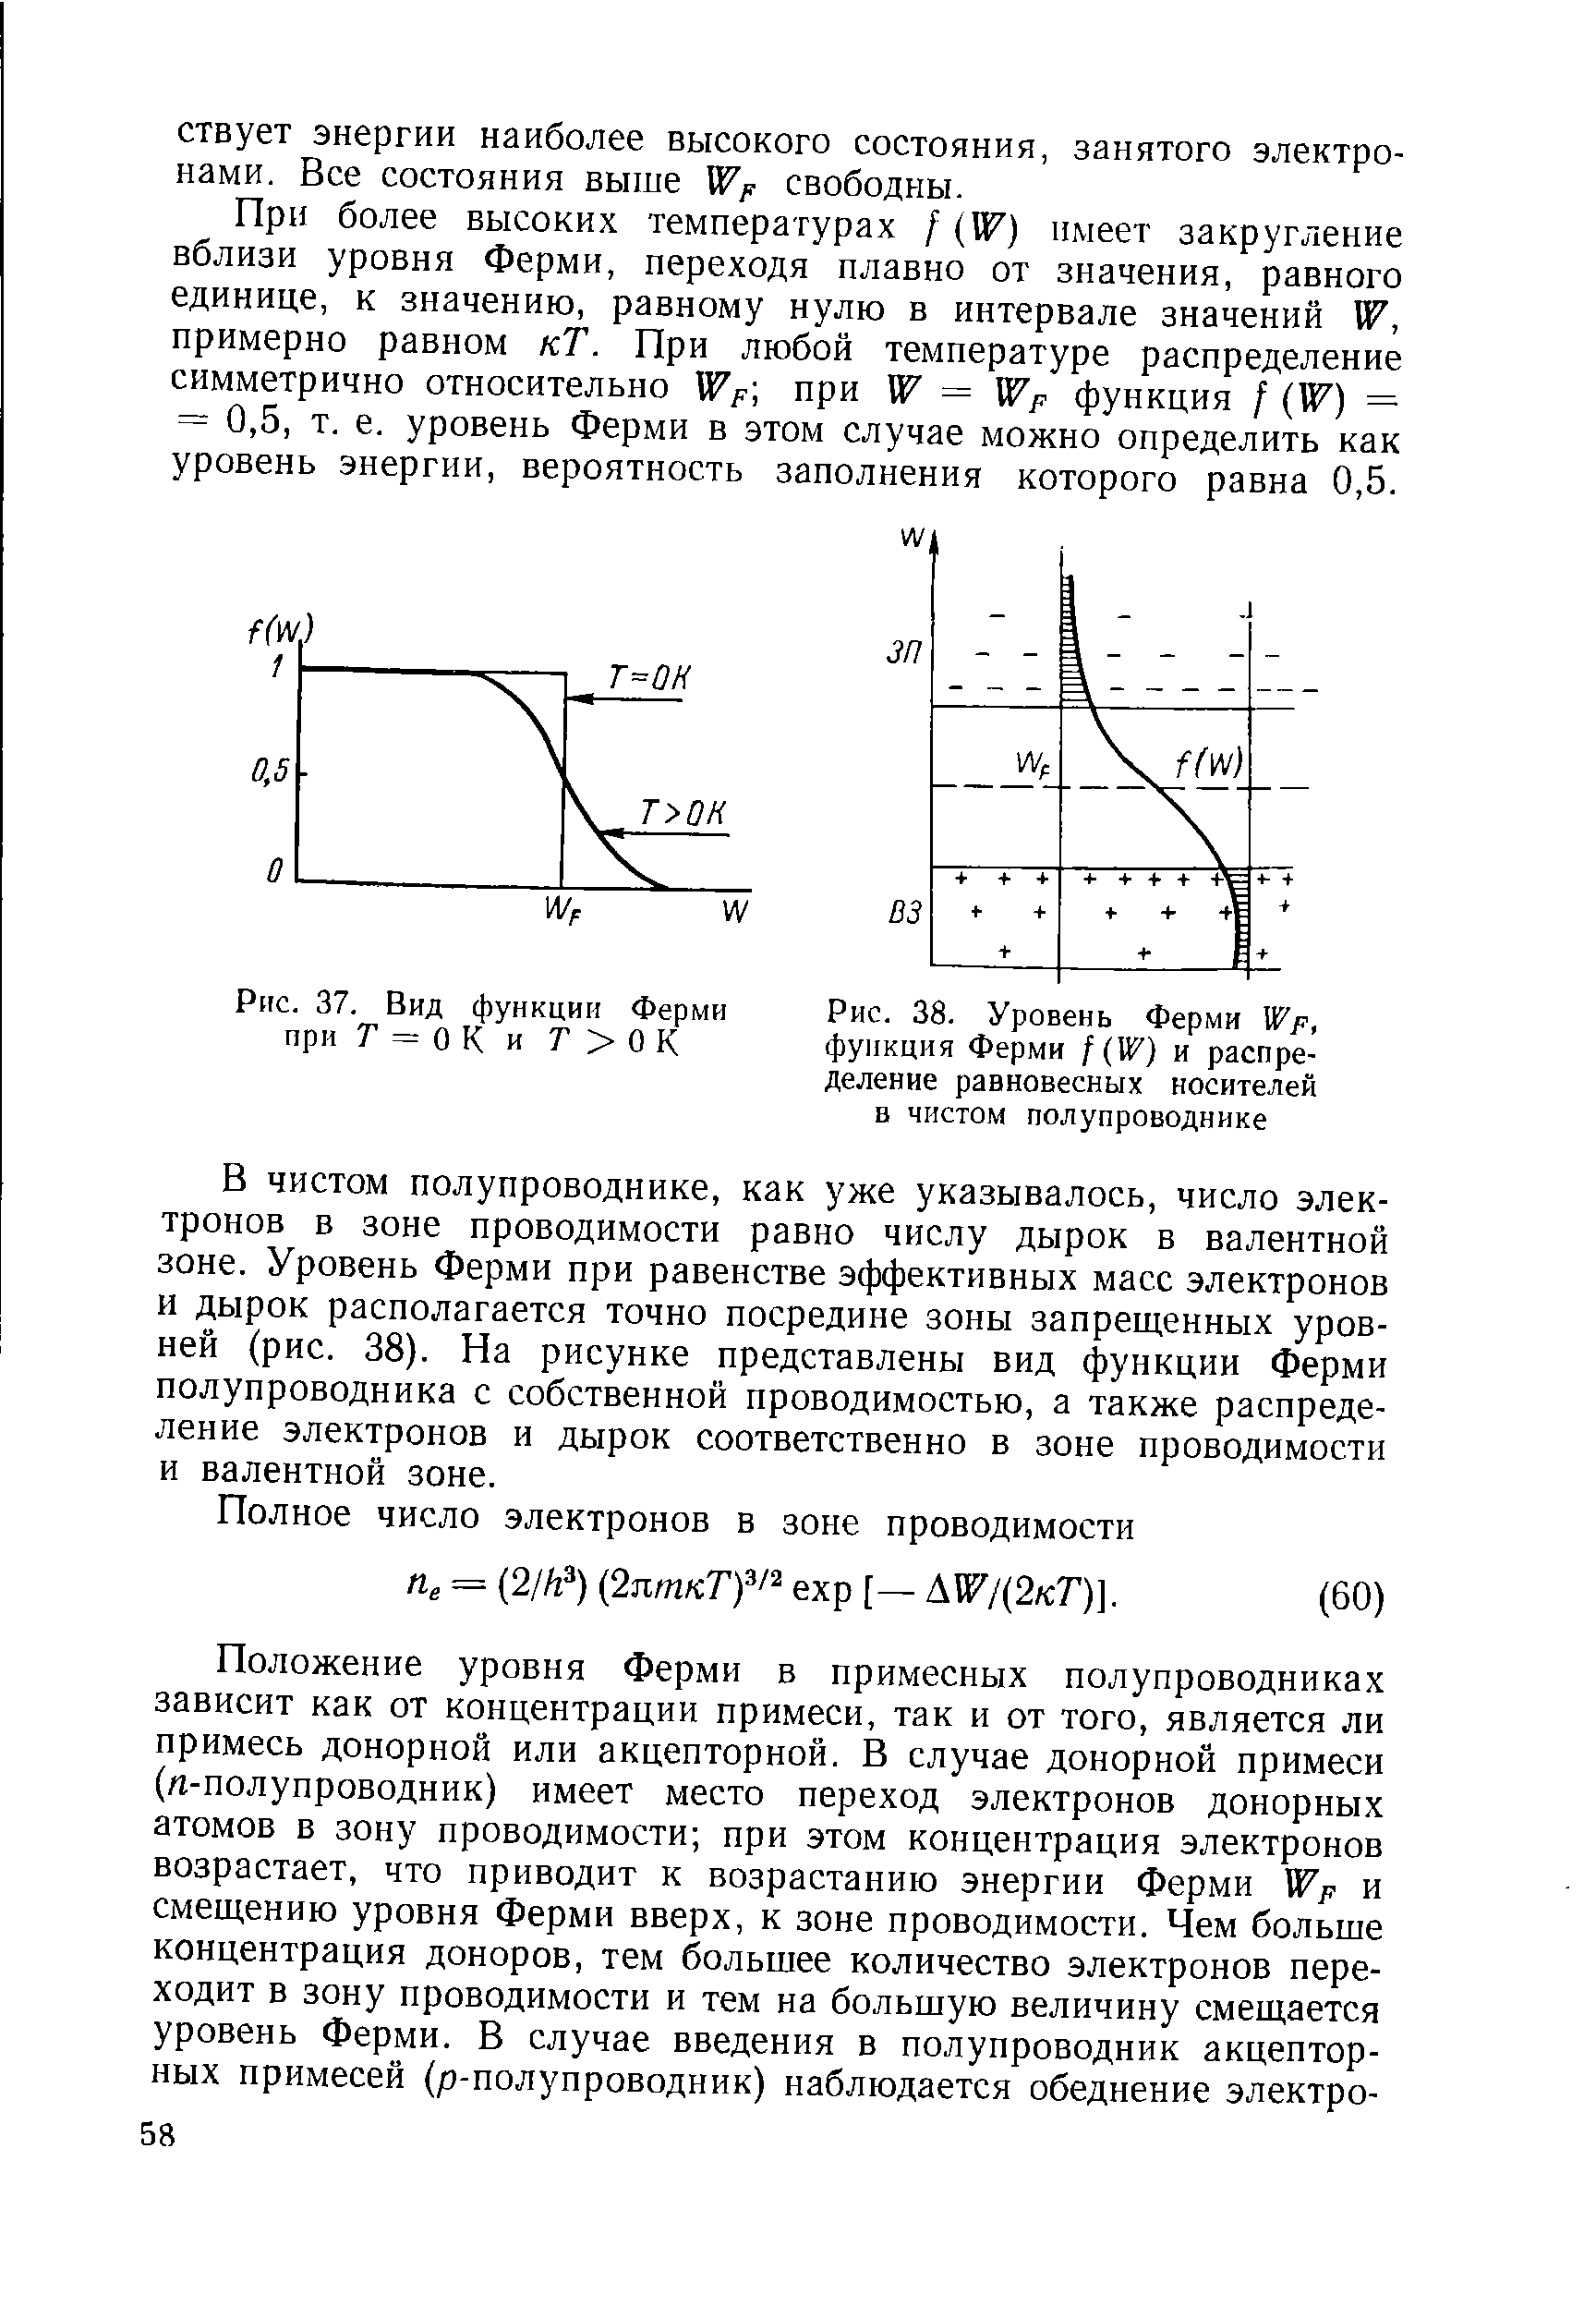 Рис. 38. Уровень Ферми Wp, фуикция Ферми f (W) и распределение равновесных носителей в чистом полупроводнике
